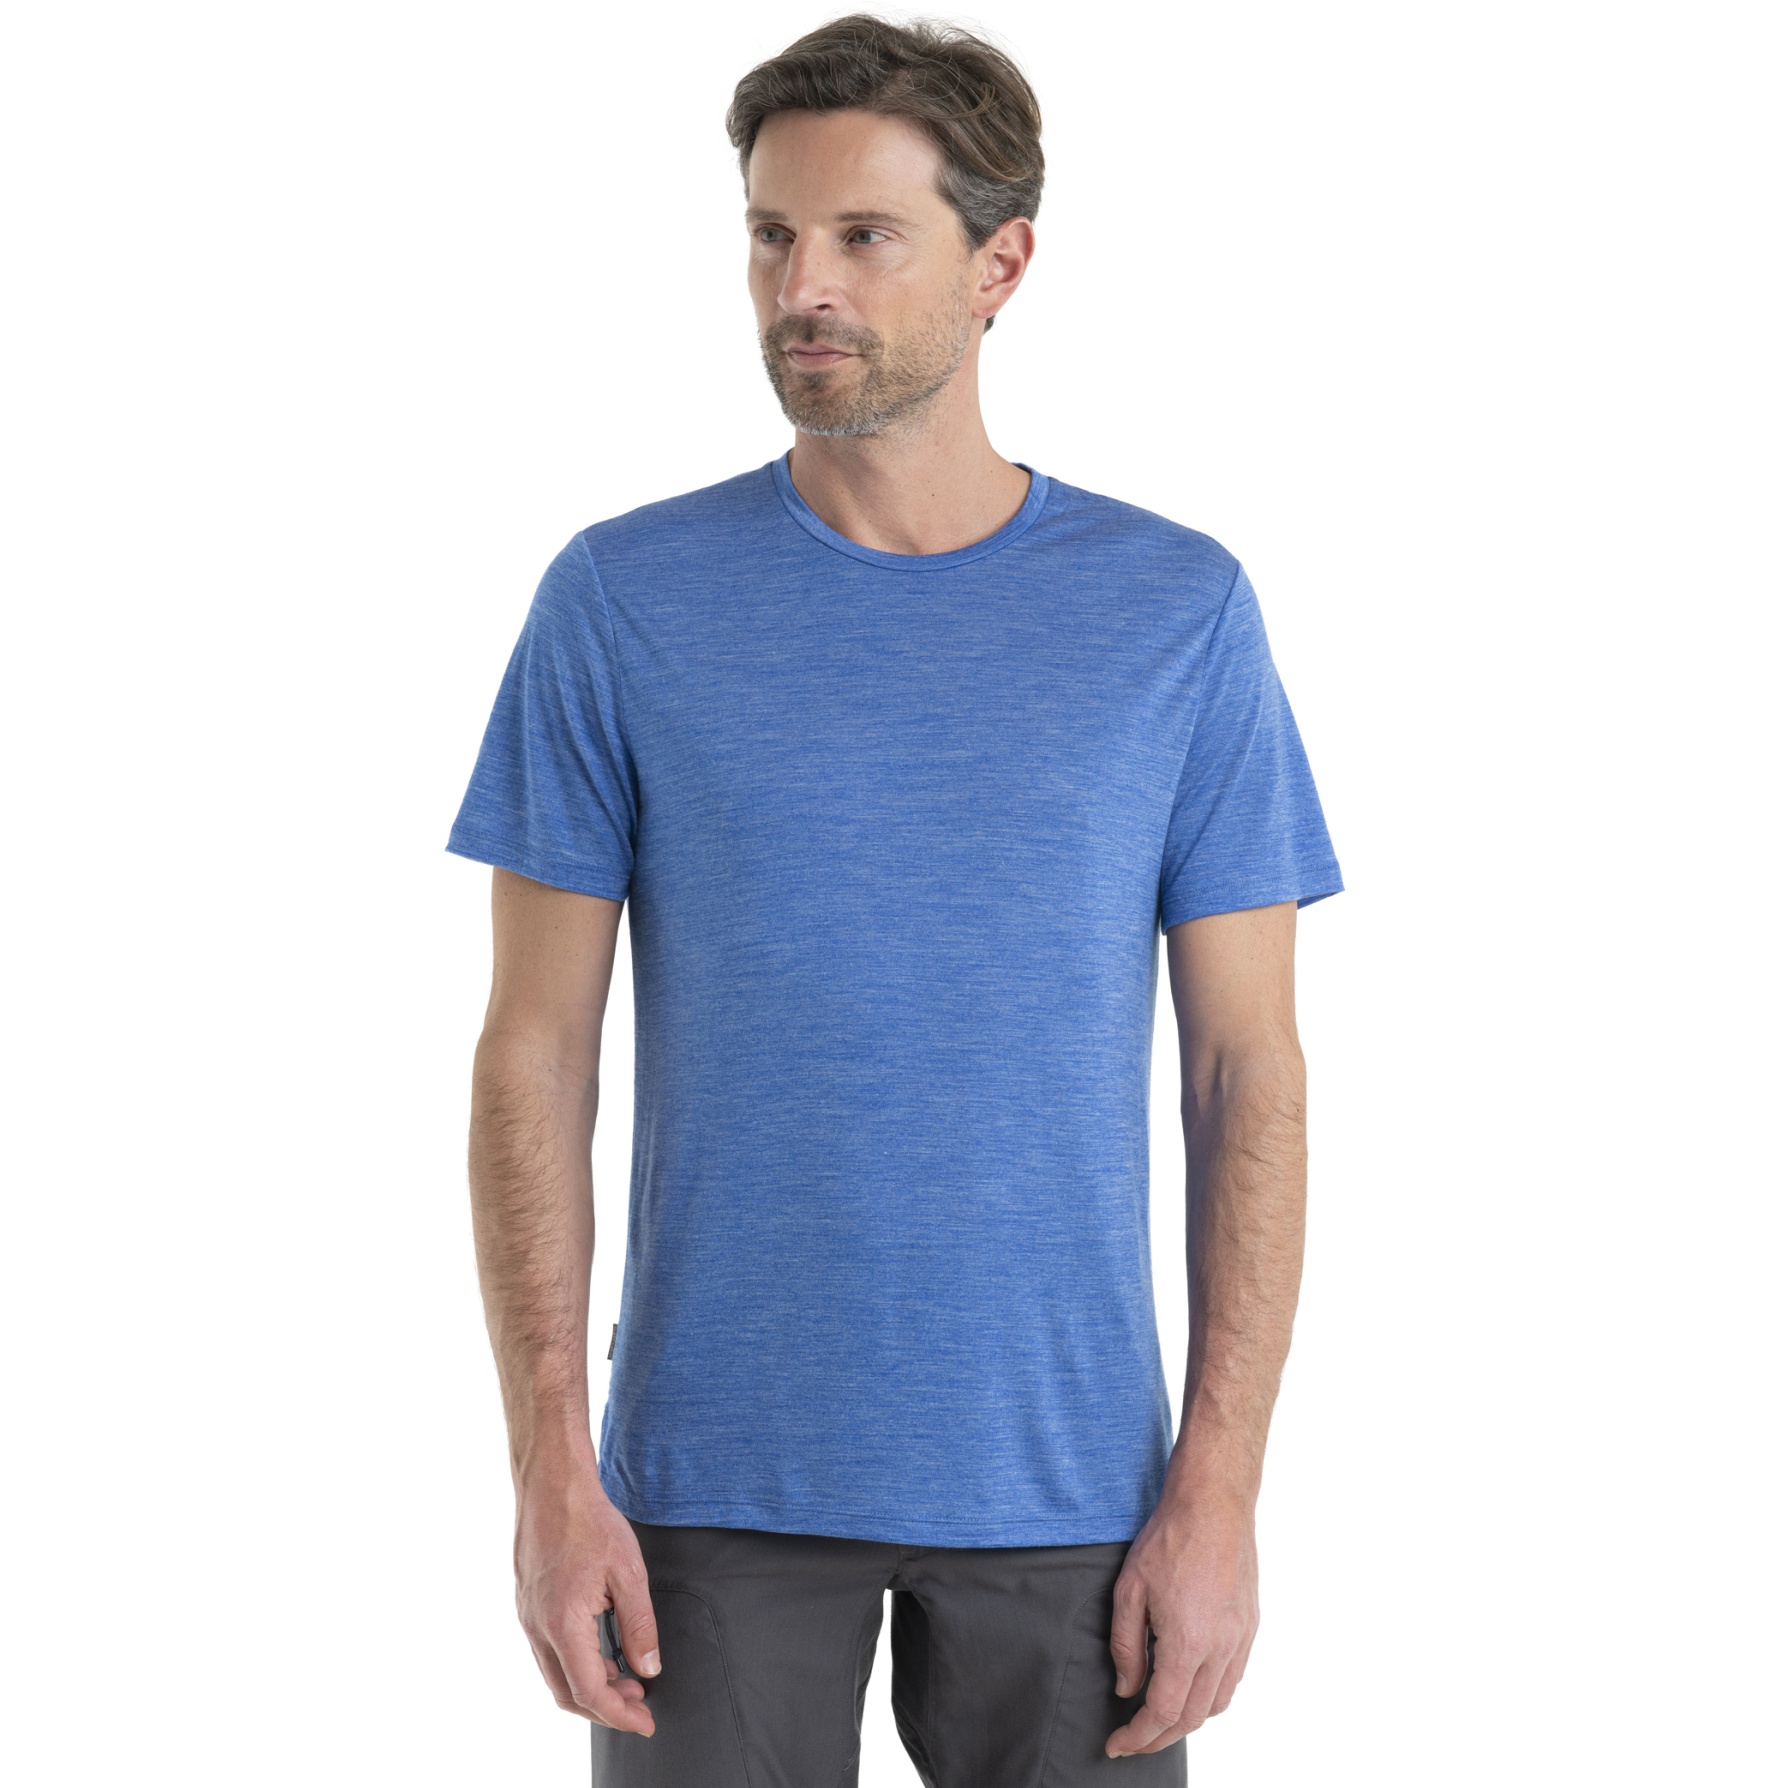 Produktbild von Icebreaker Sphere II Herren T-Shirt - Lazurite HTHR